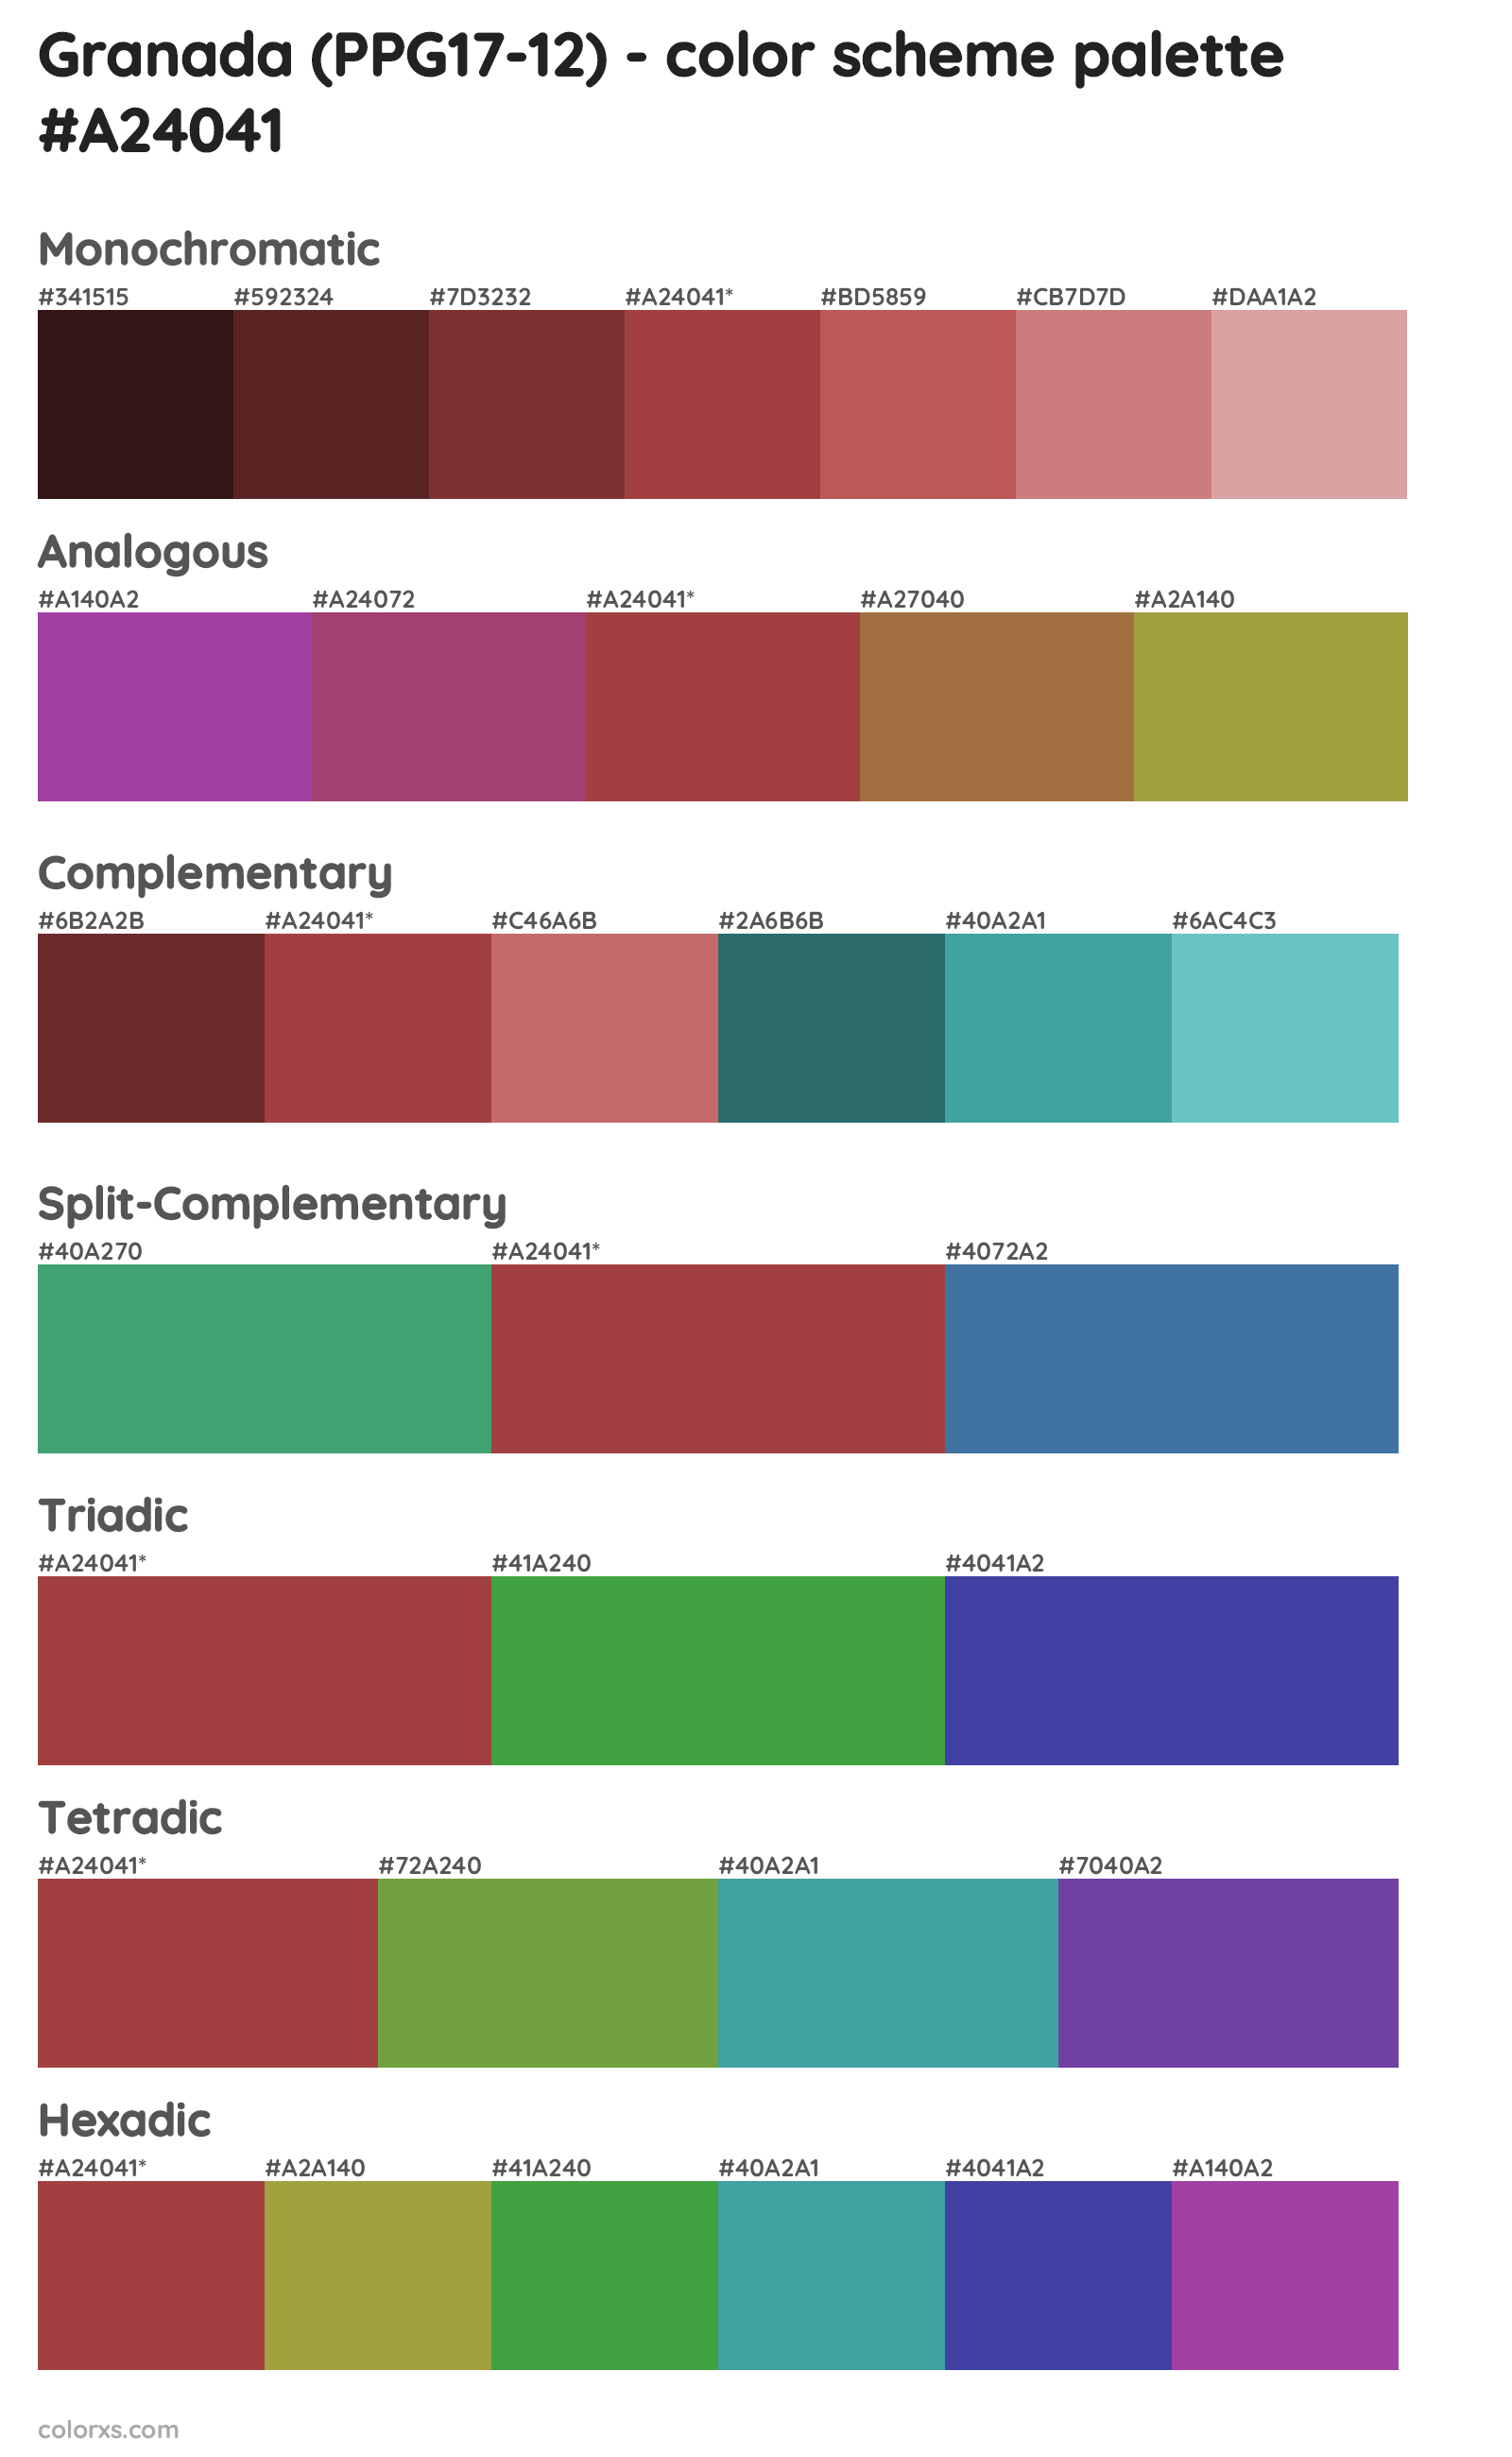 Granada (PPG17-12) Color Scheme Palettes